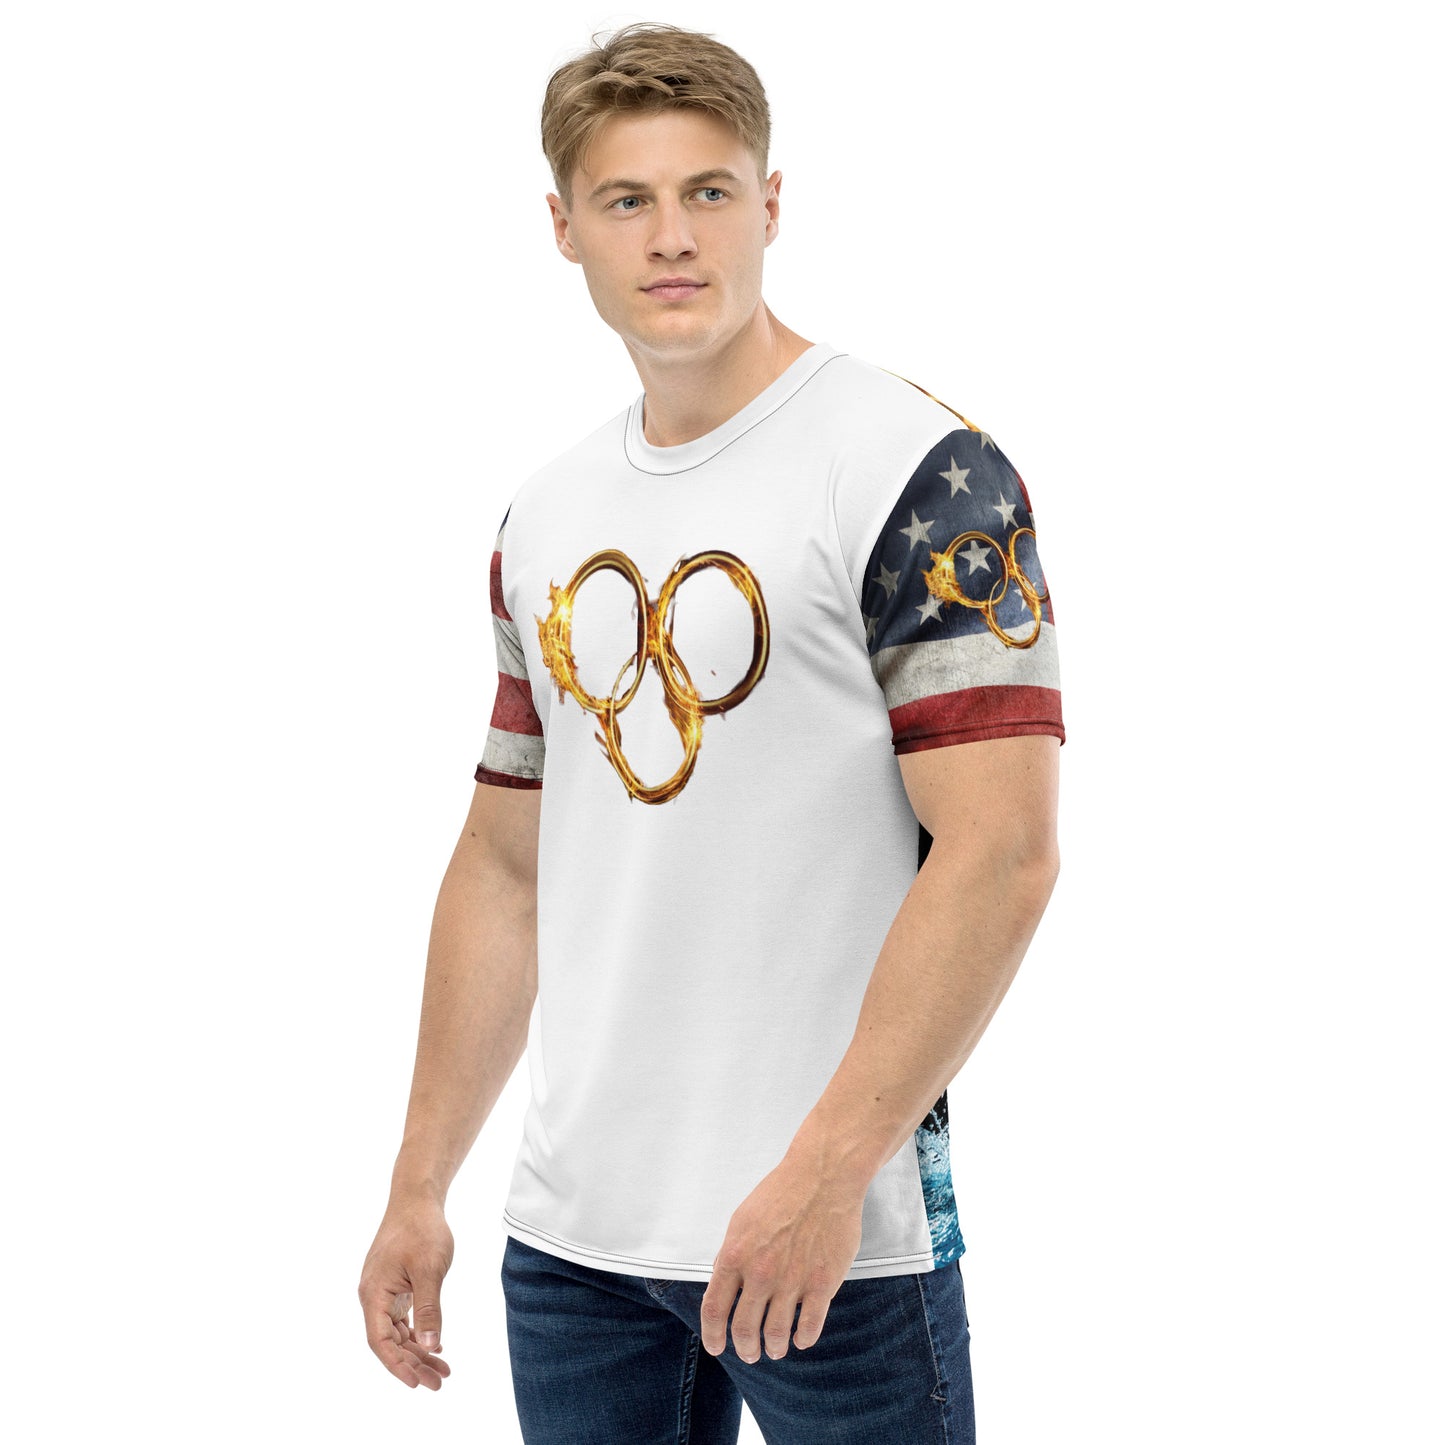 Swimmer Olympic Rings 954 Men's t-shirt